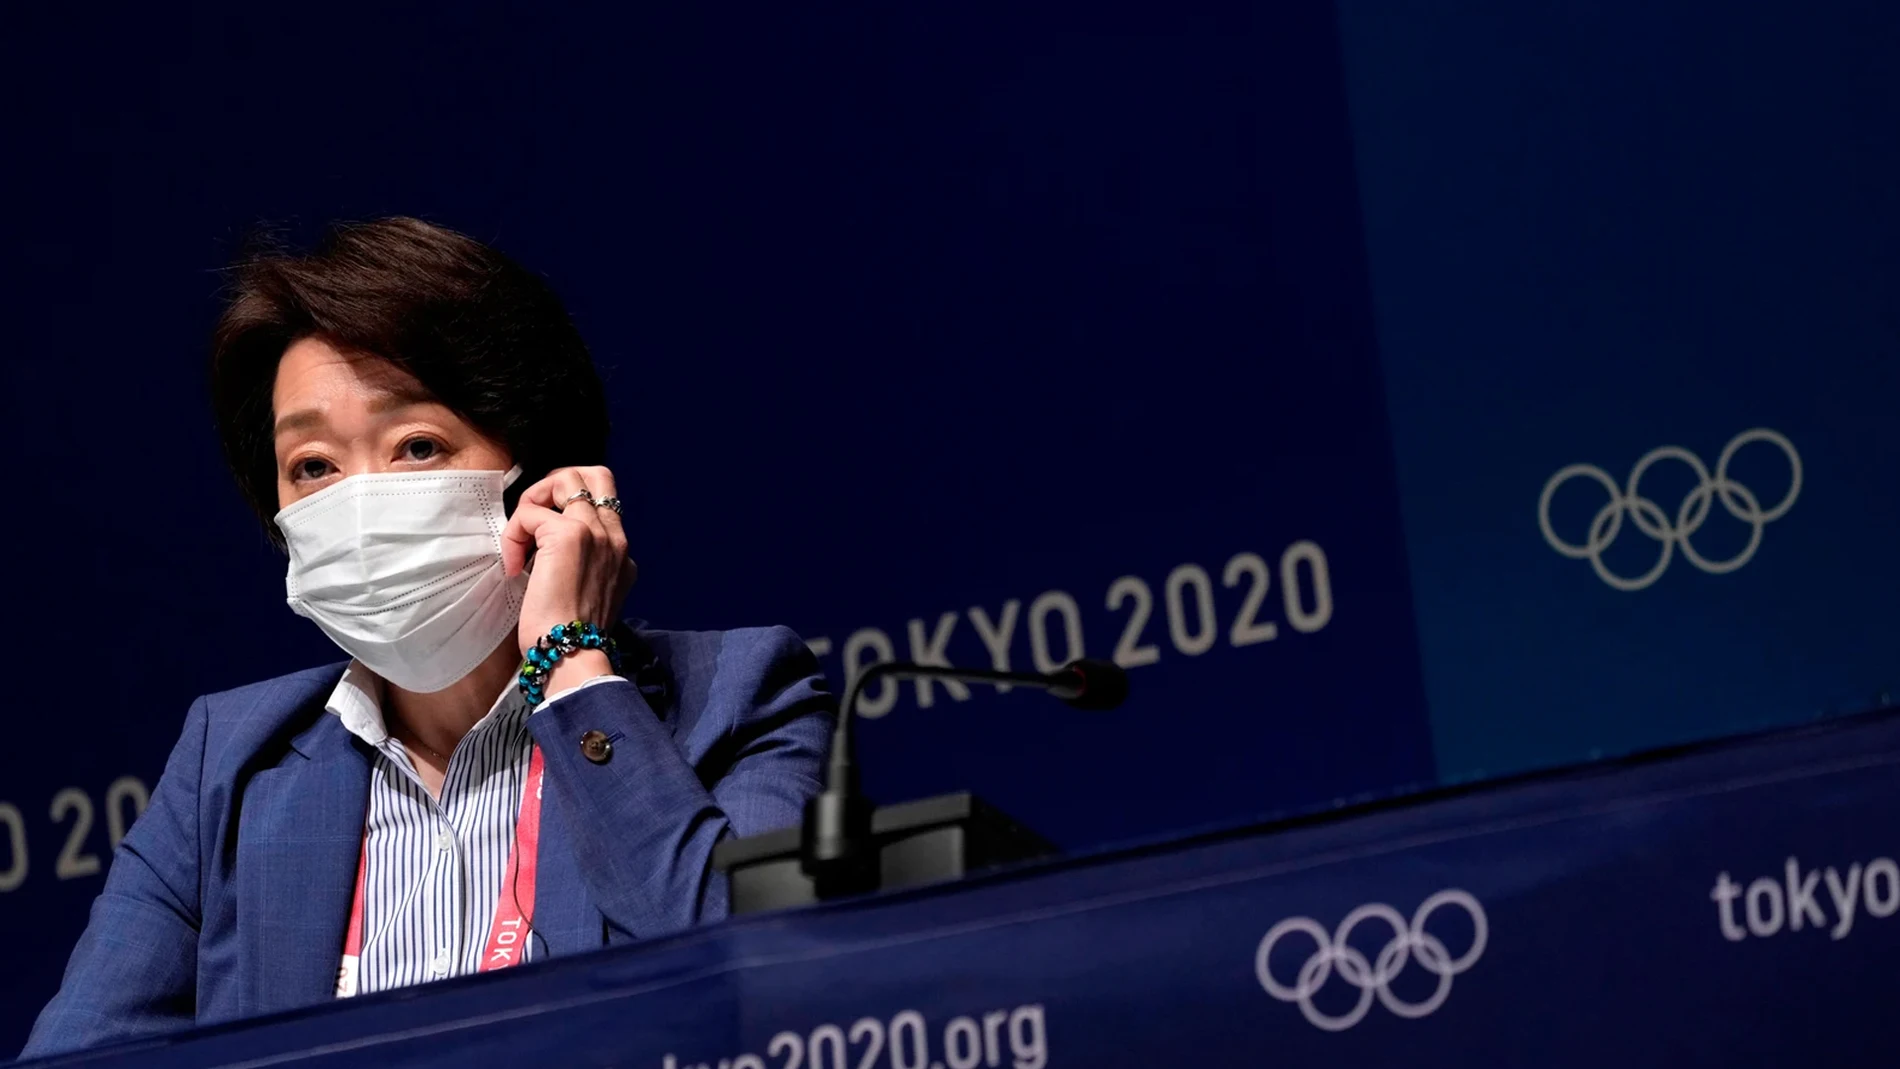 Deportes Antena 3 (17-07-21) Tokio registra el primer positivo por coronavirus en la Villa Olímpica